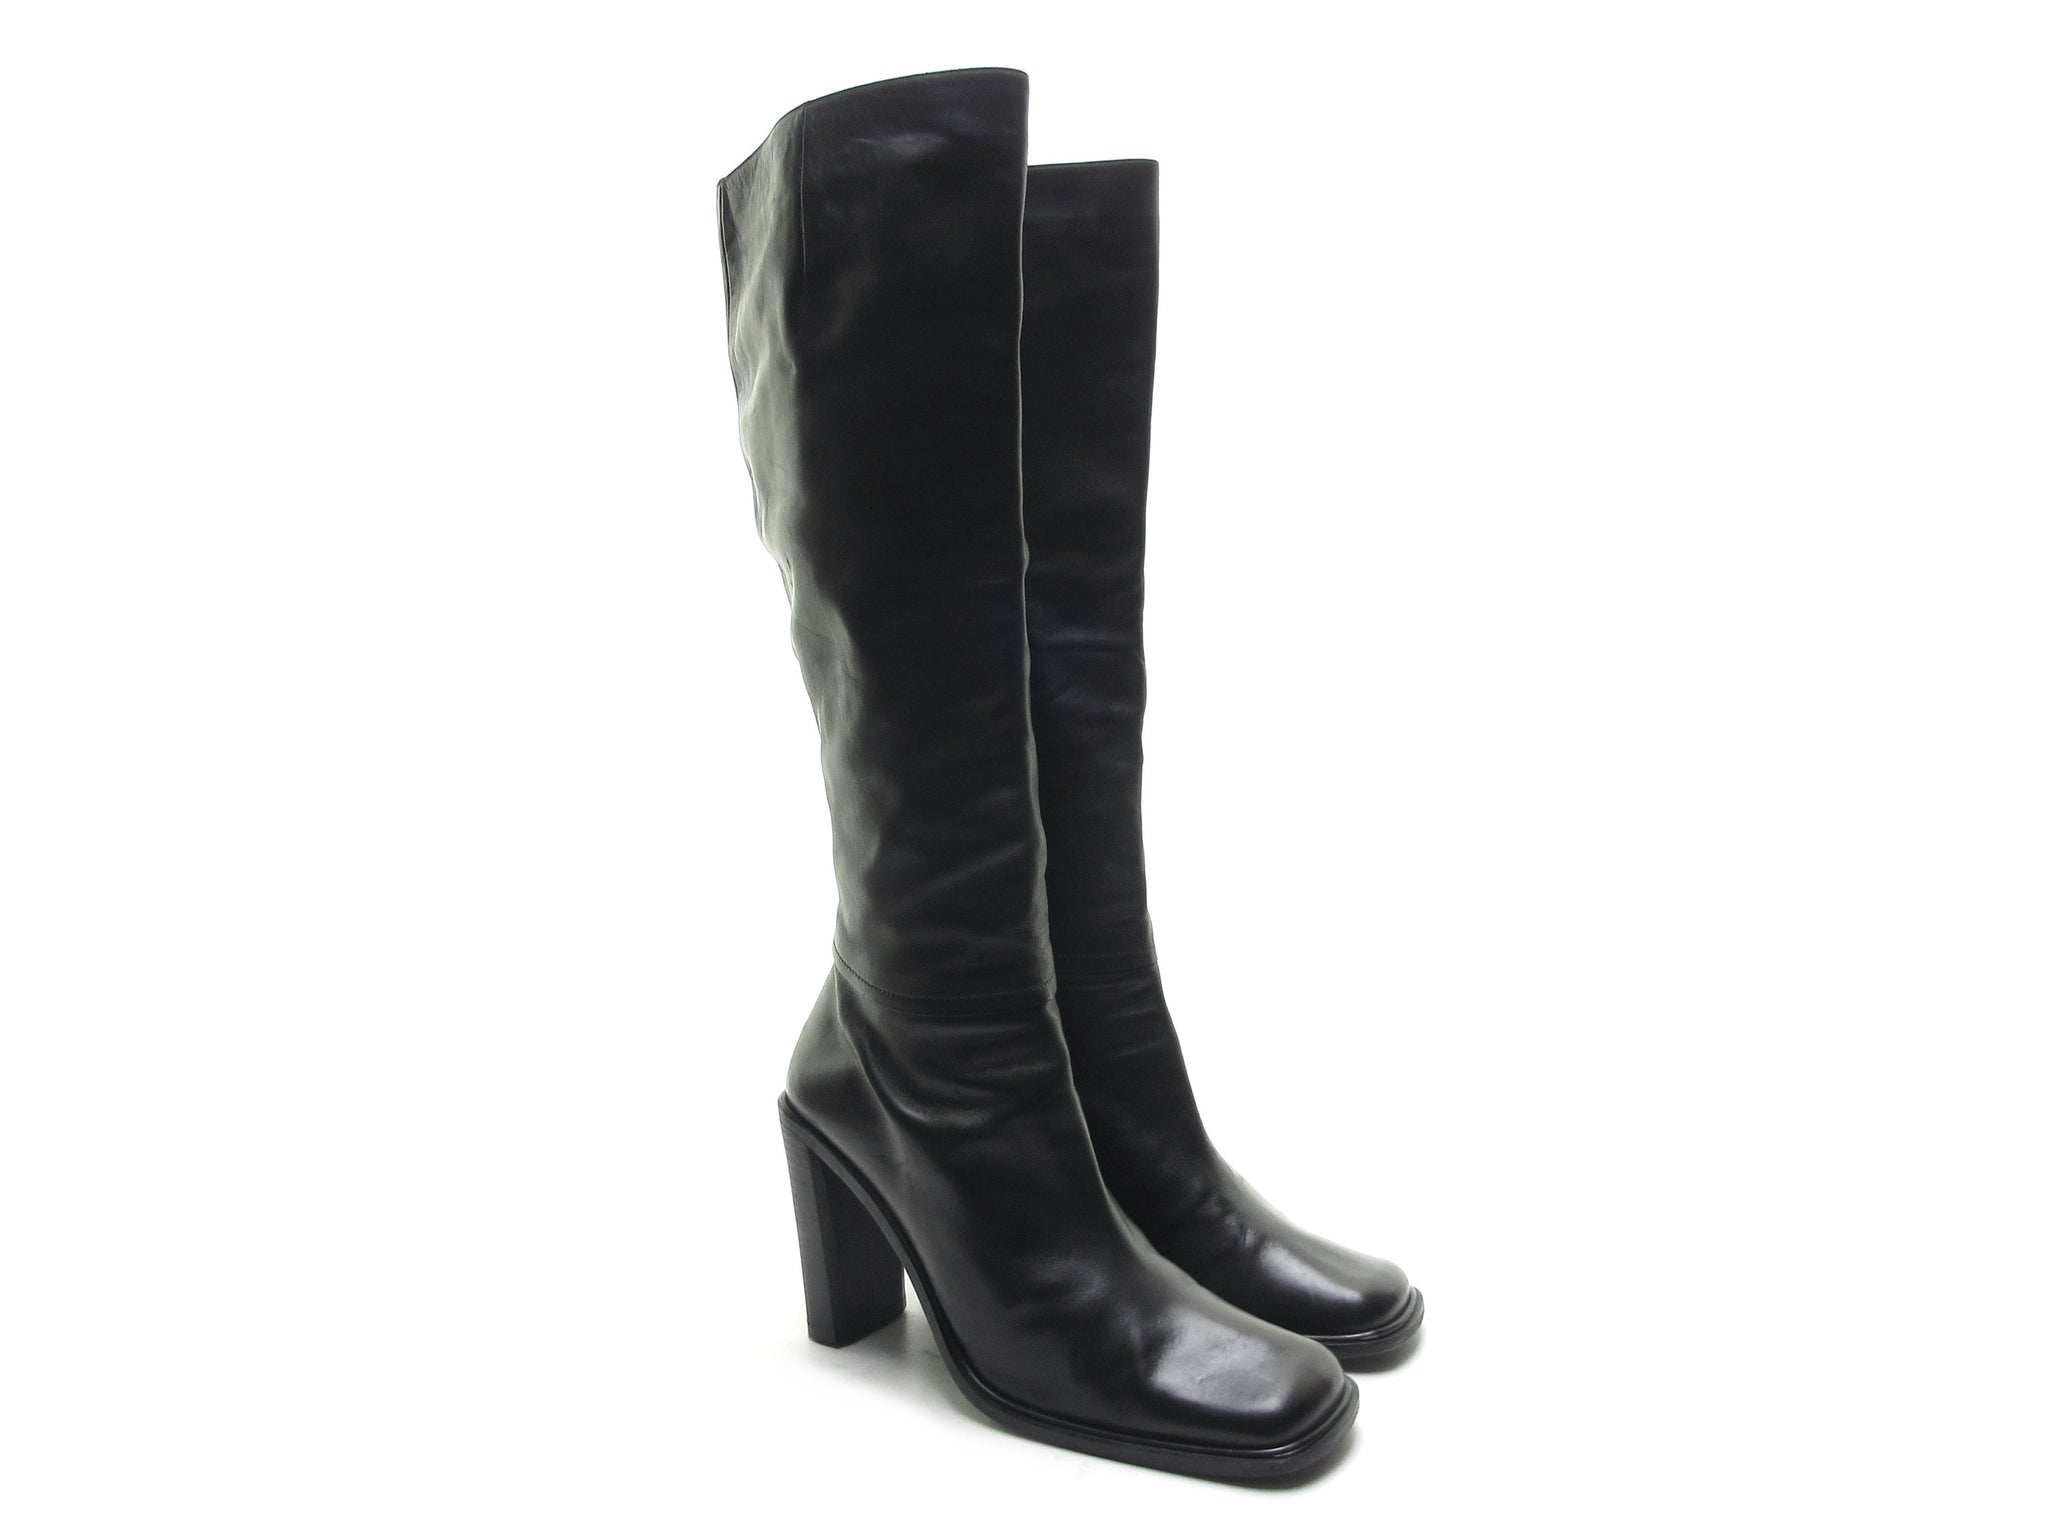 Naturalizer Lesson Women's Boots Black Suede Size 6 M - Walmart.com